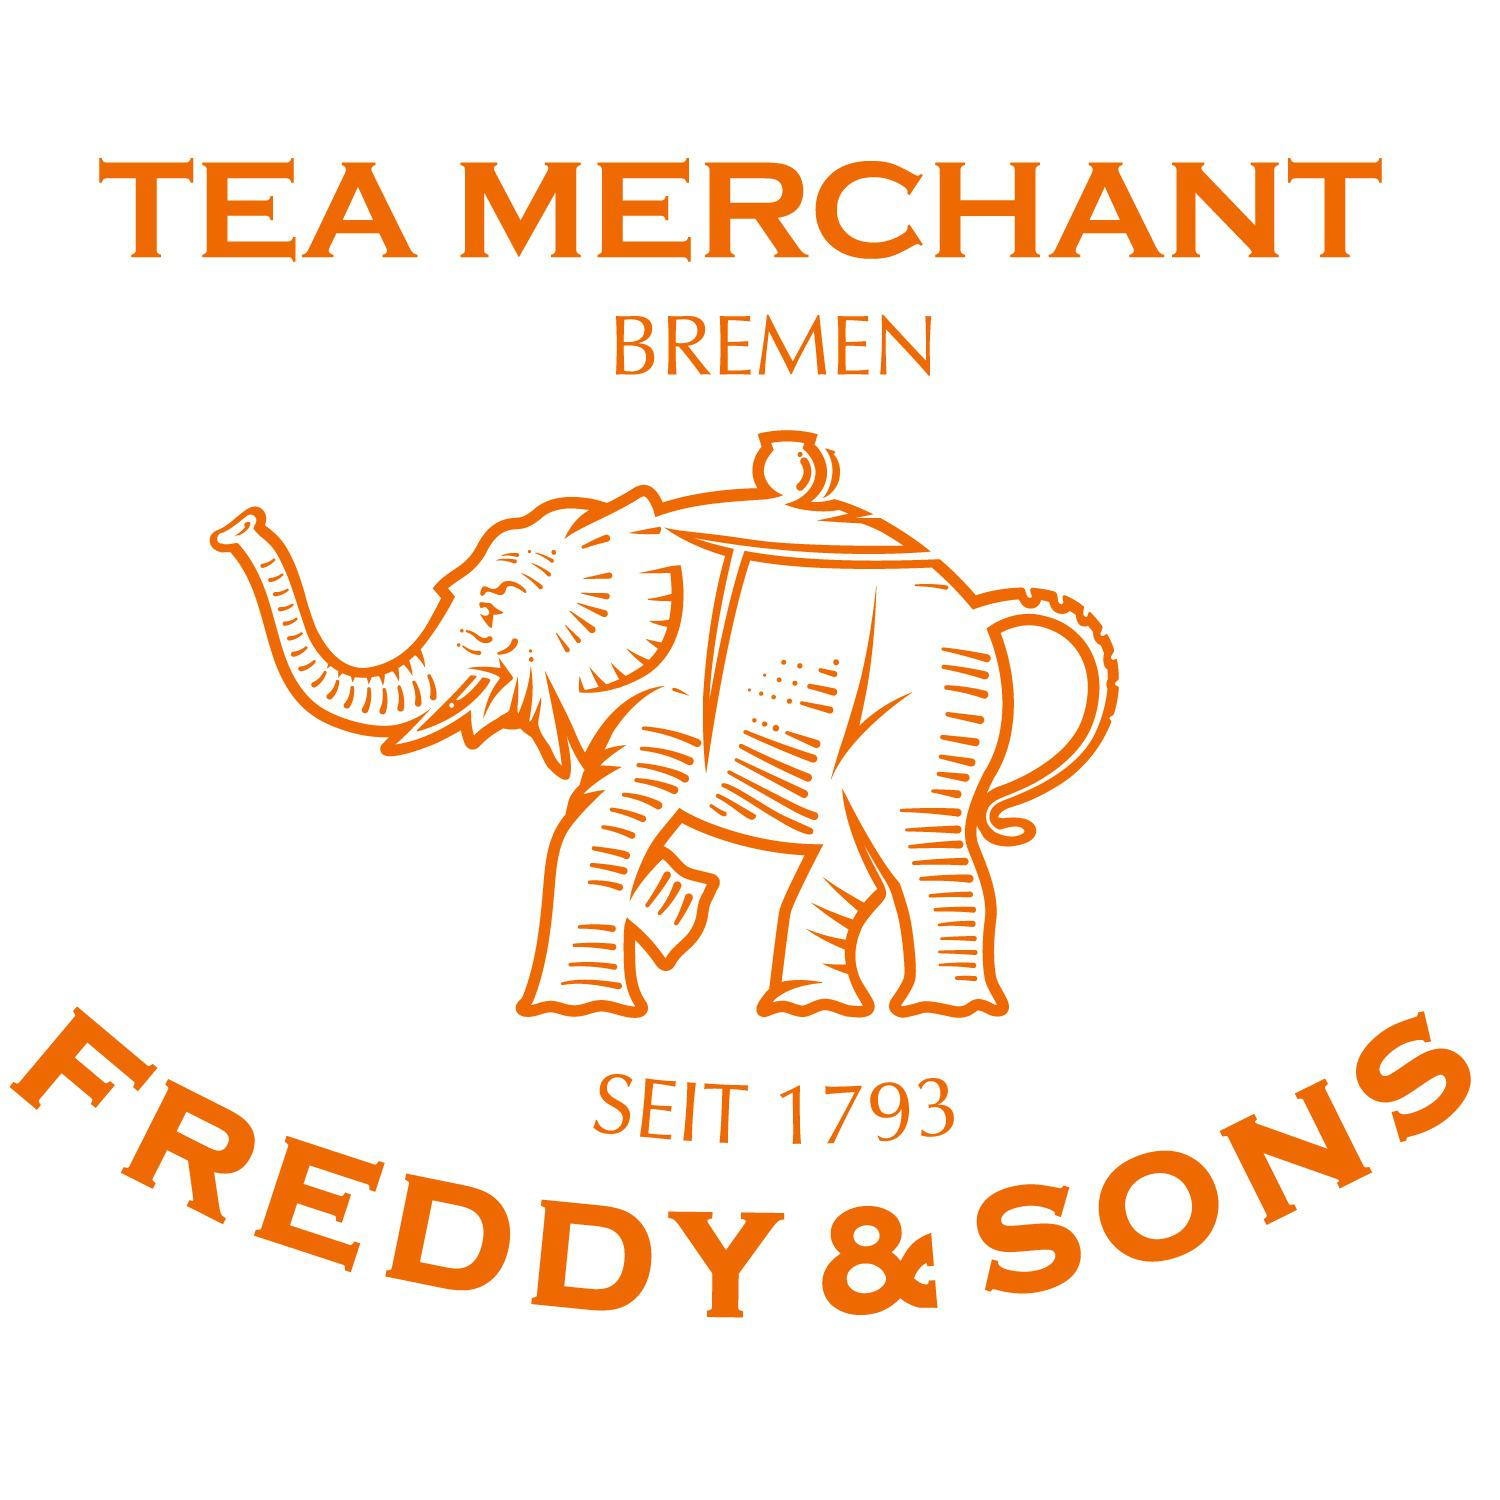 Tea Merchant Freddy & Sons in Bremen